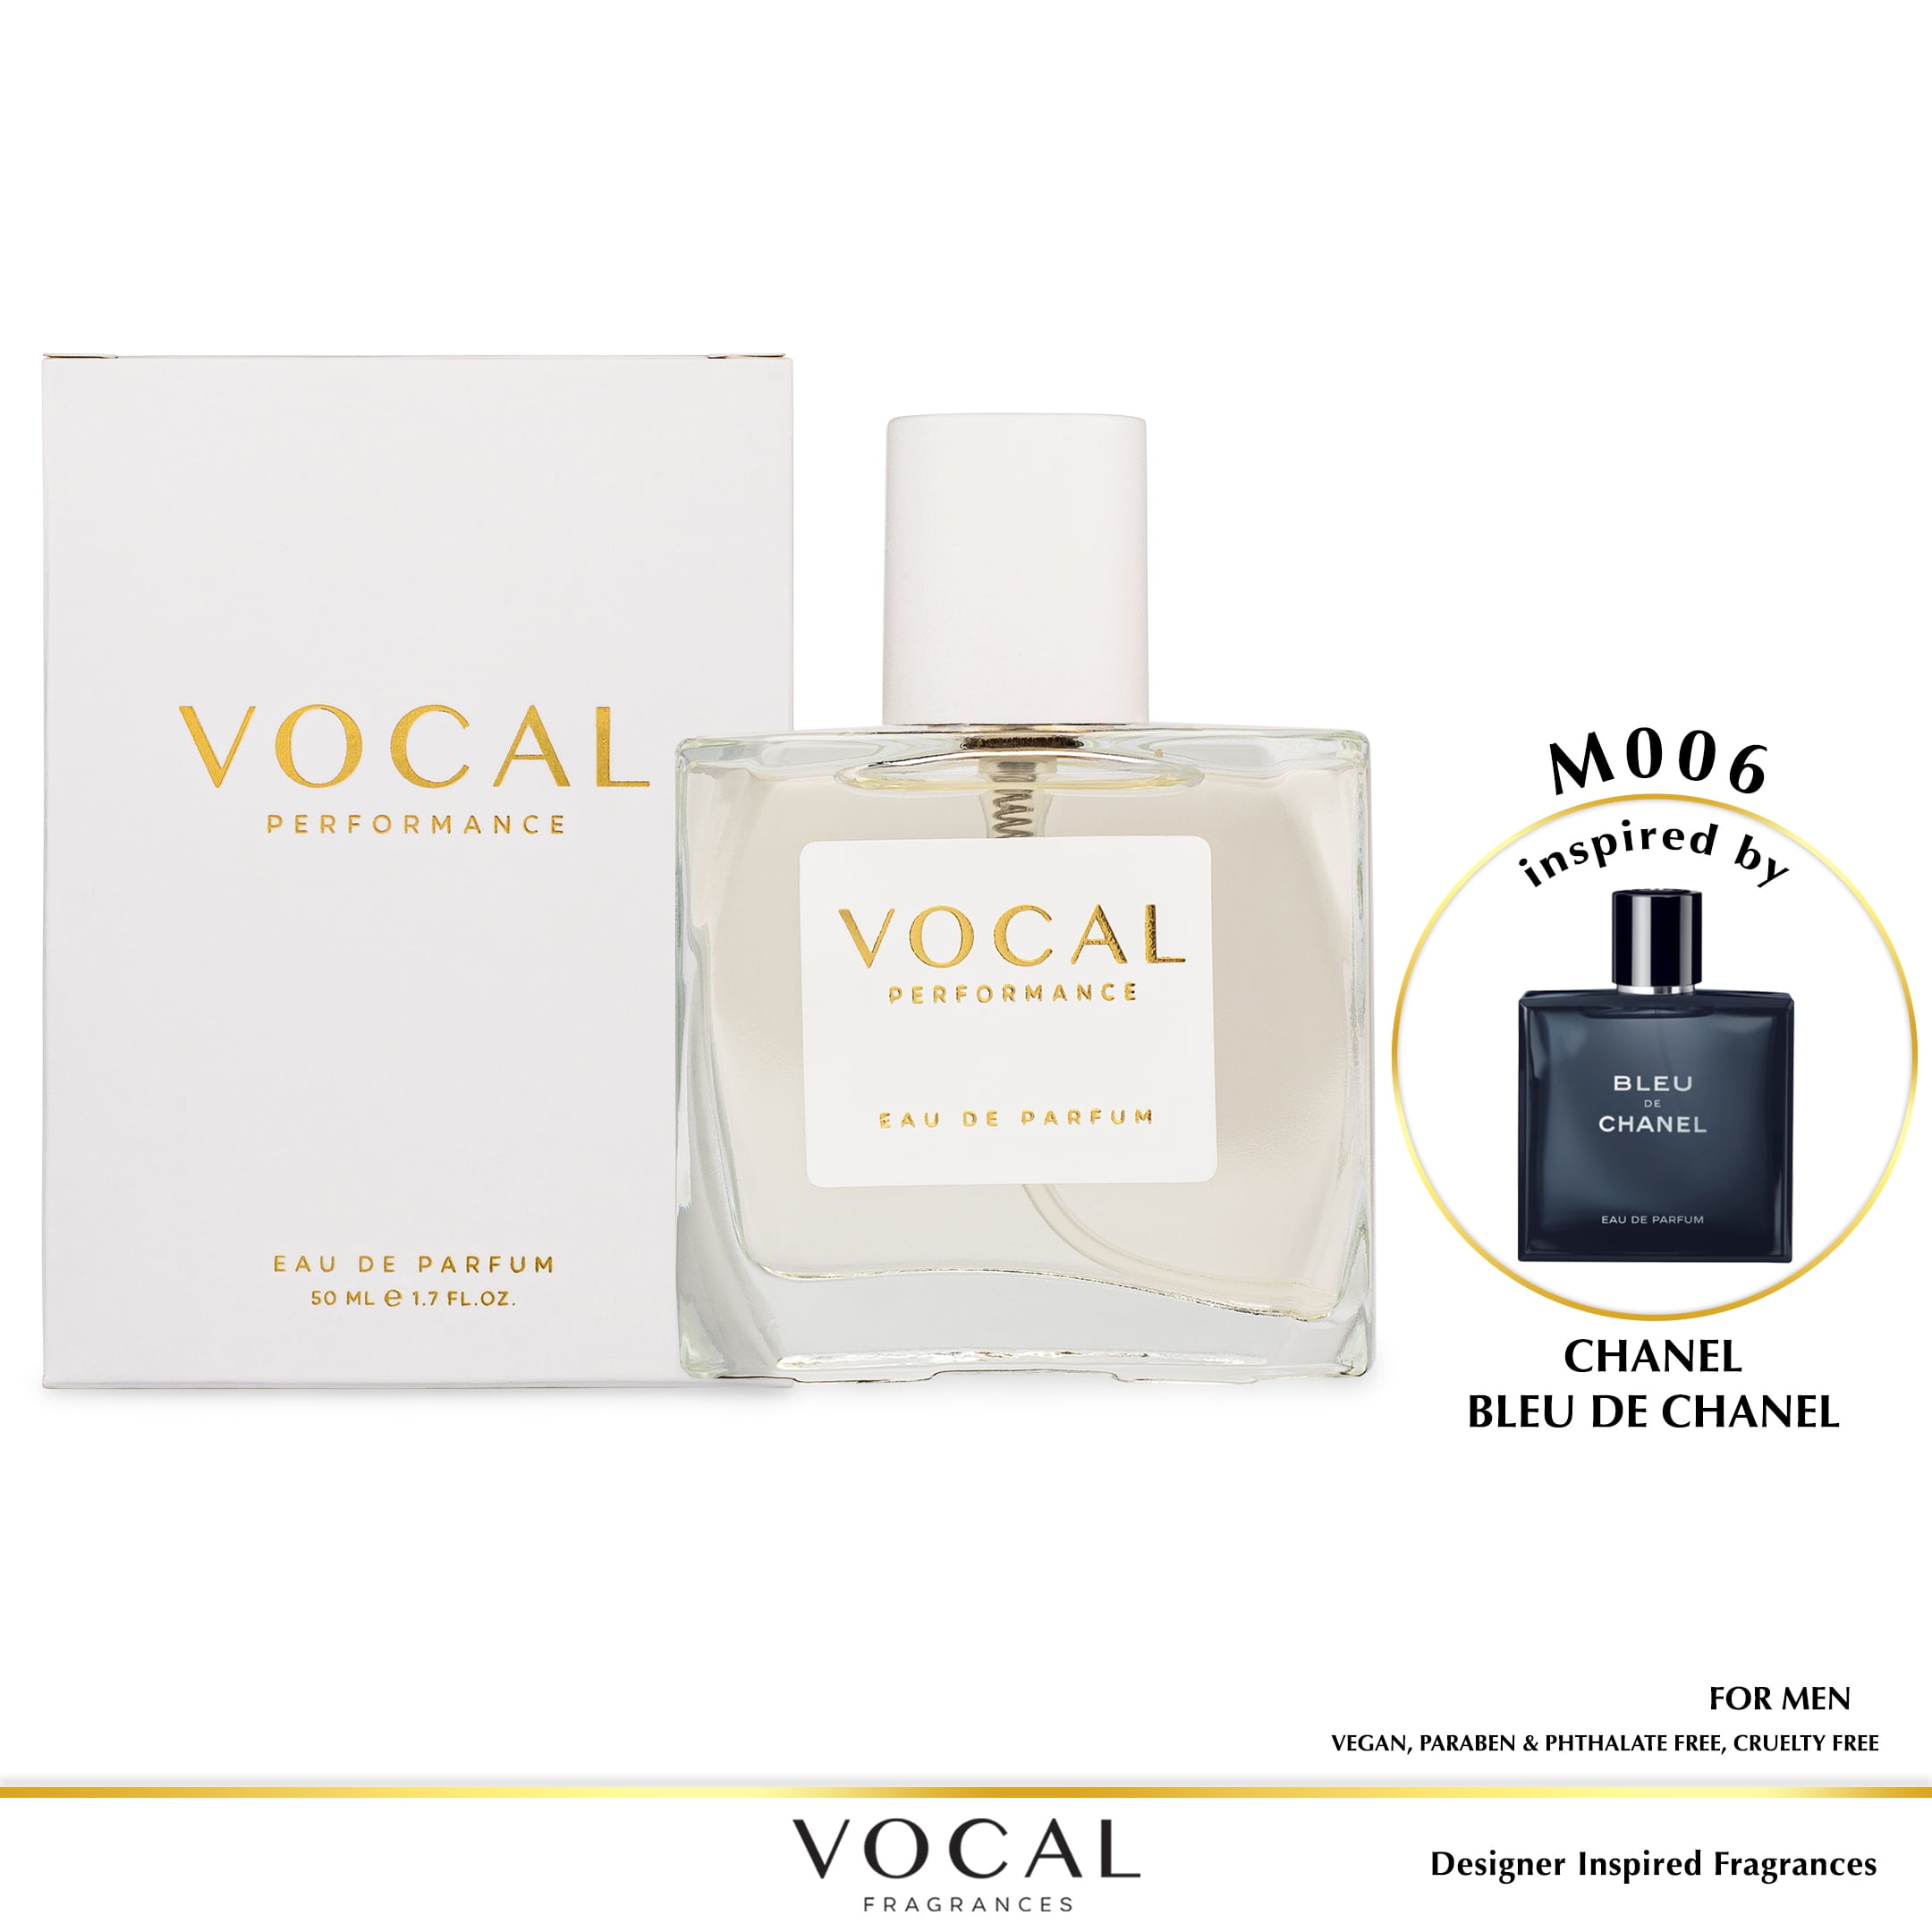 Vocal Fragrance Inspired by Chanel Bleu De Chanel Eau de Parfum